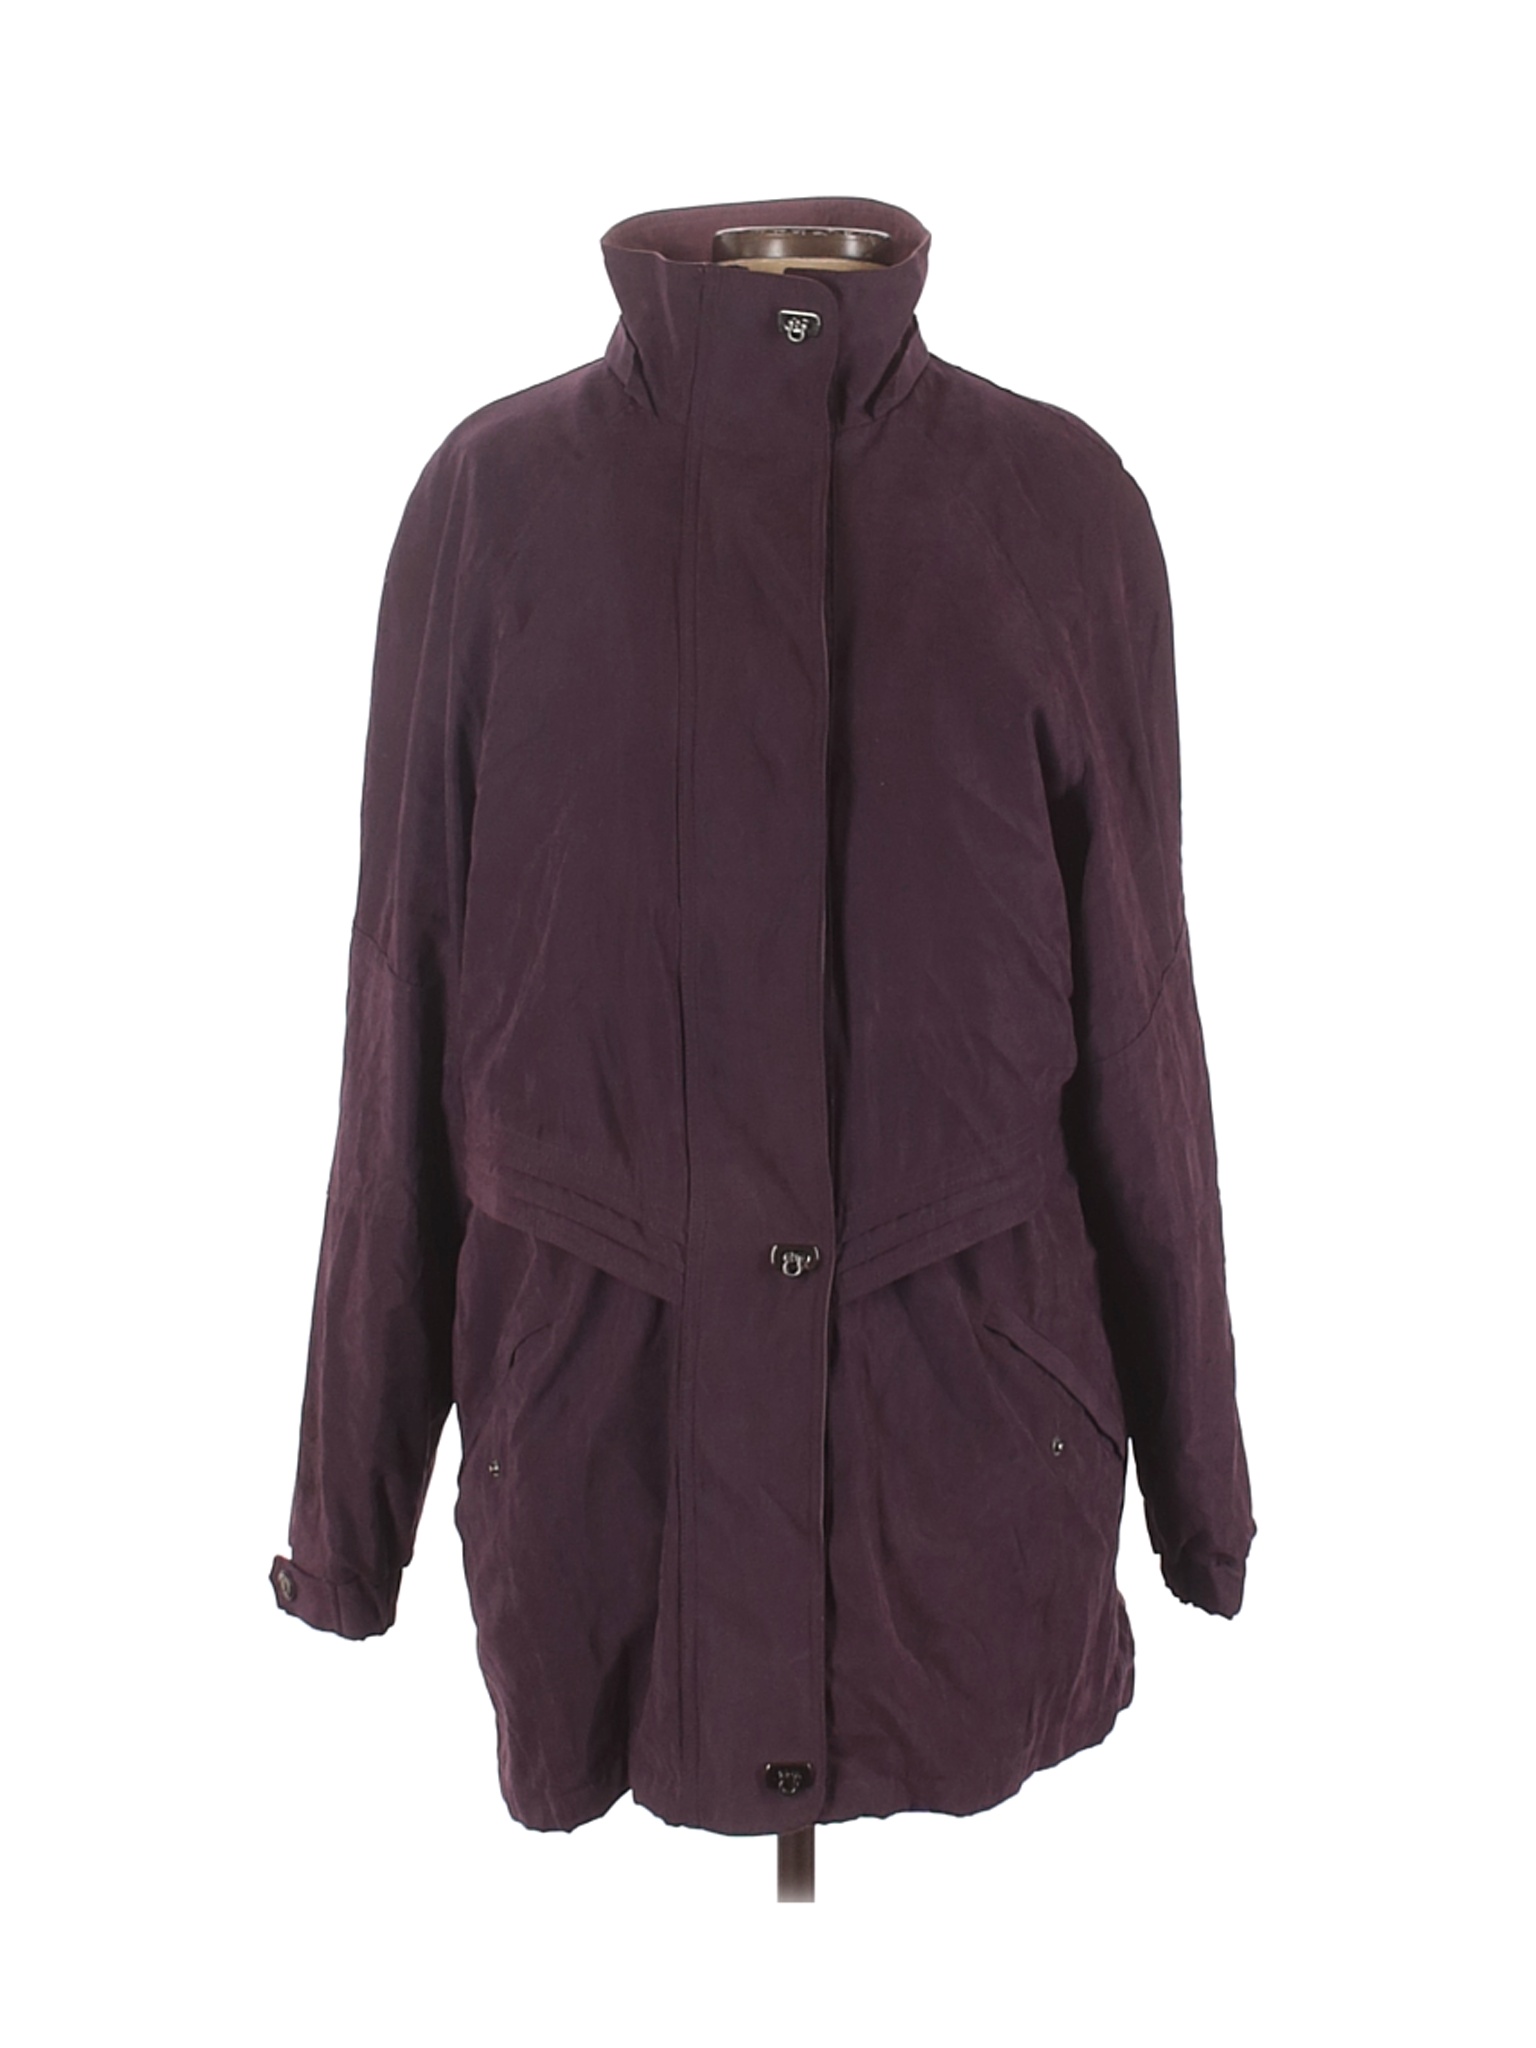 St. John's Bay Women Purple Coat L | eBay